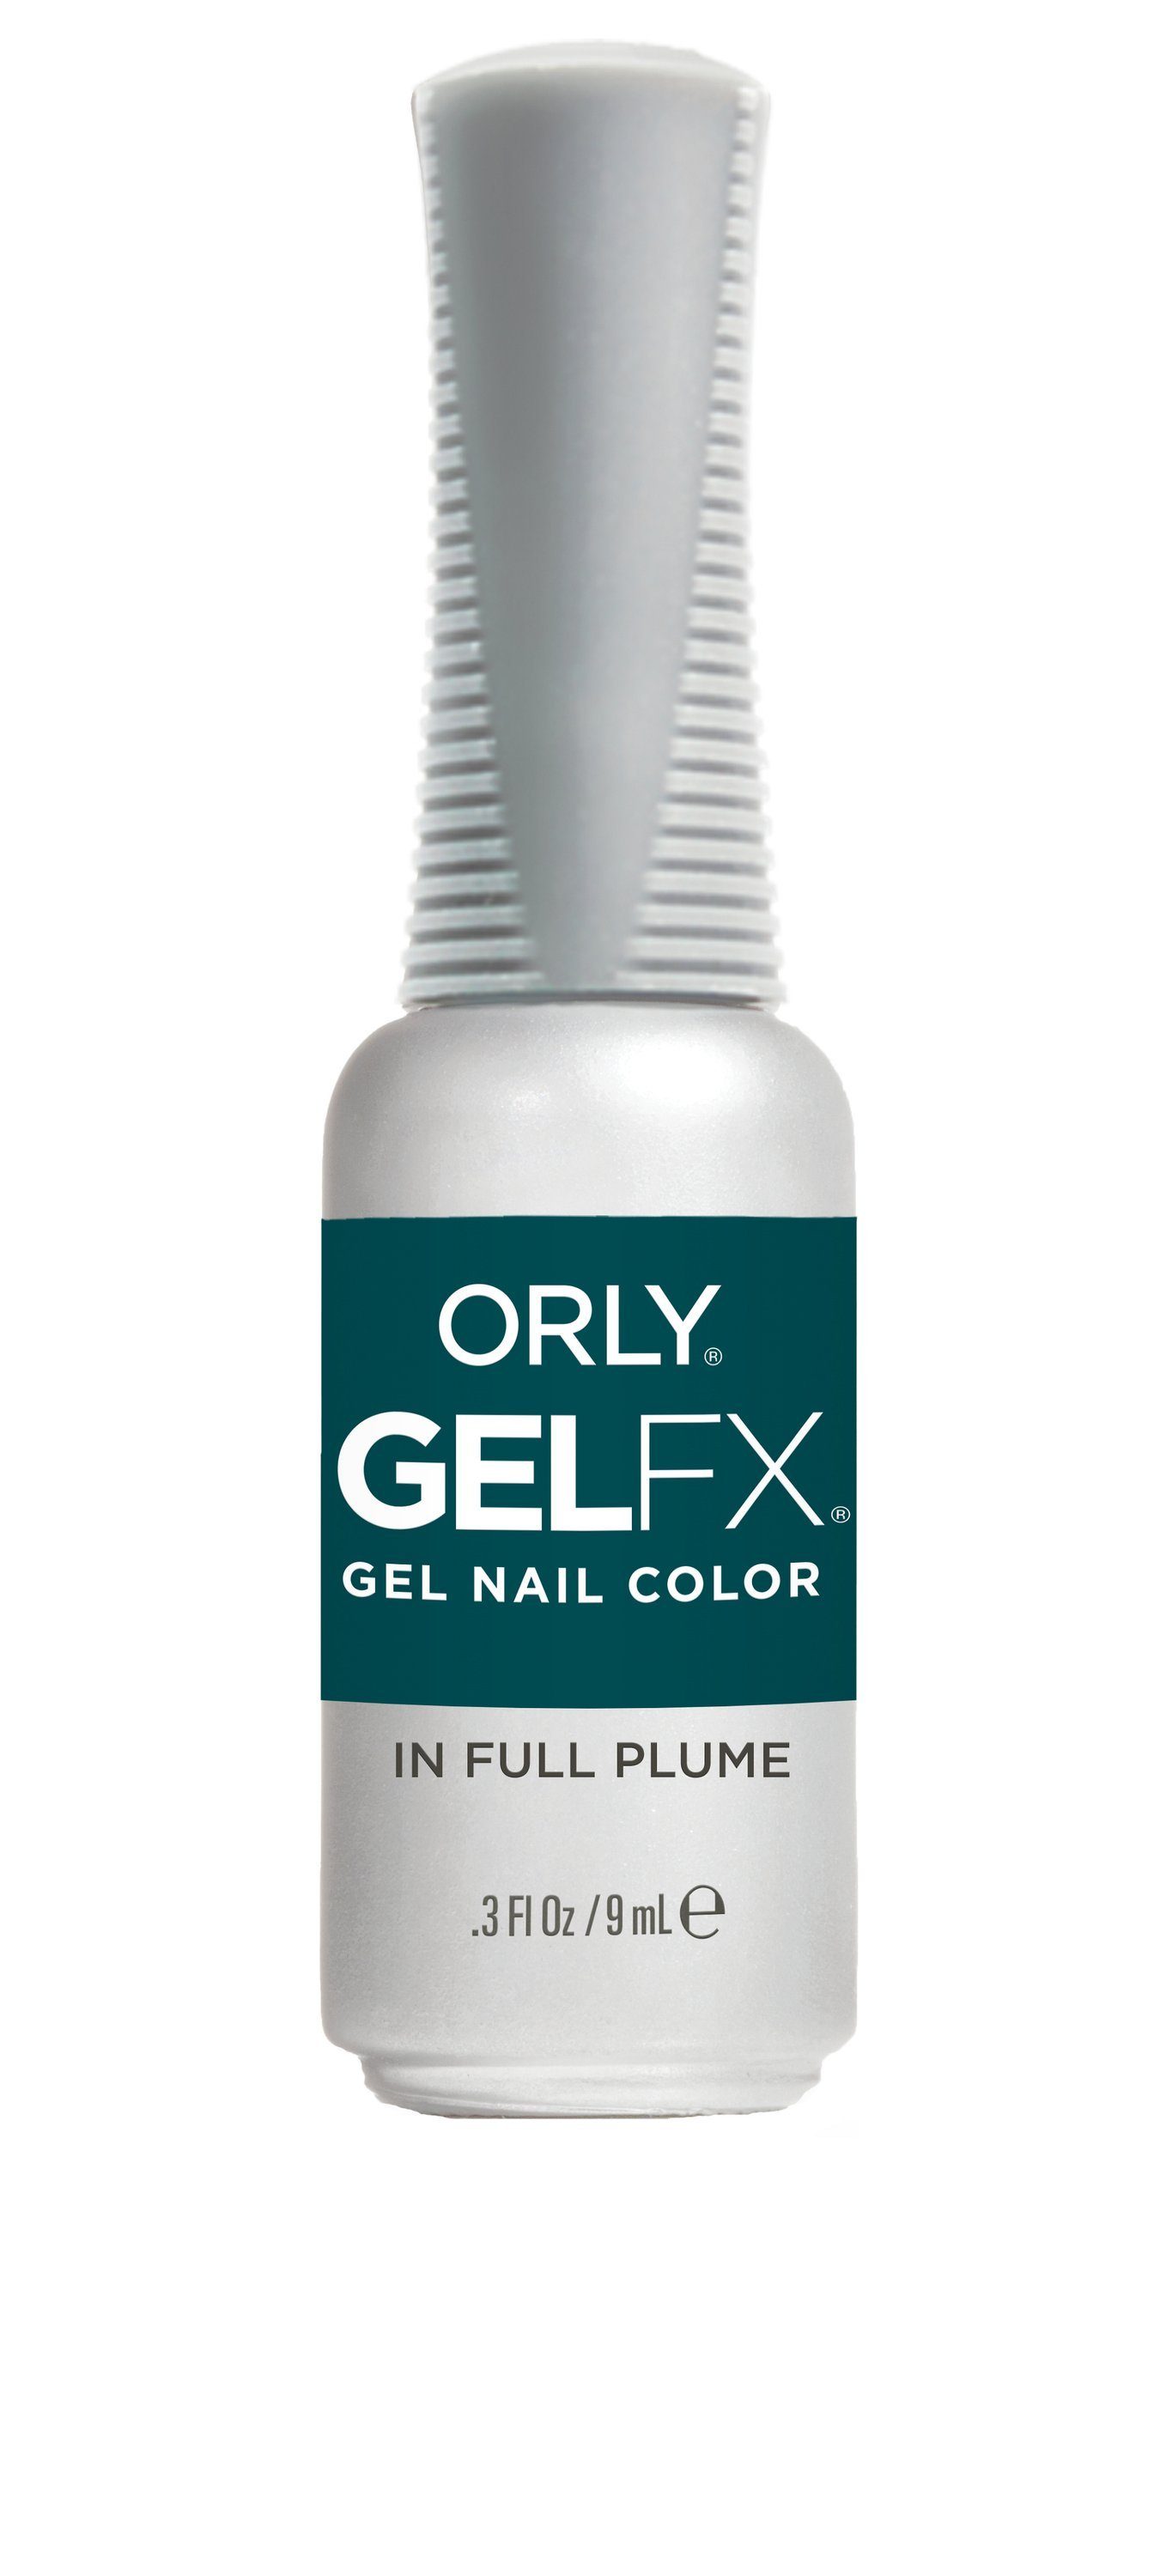 ORLY UV-Nagellack ORLY GEL FX In Full Plume, 9 ml